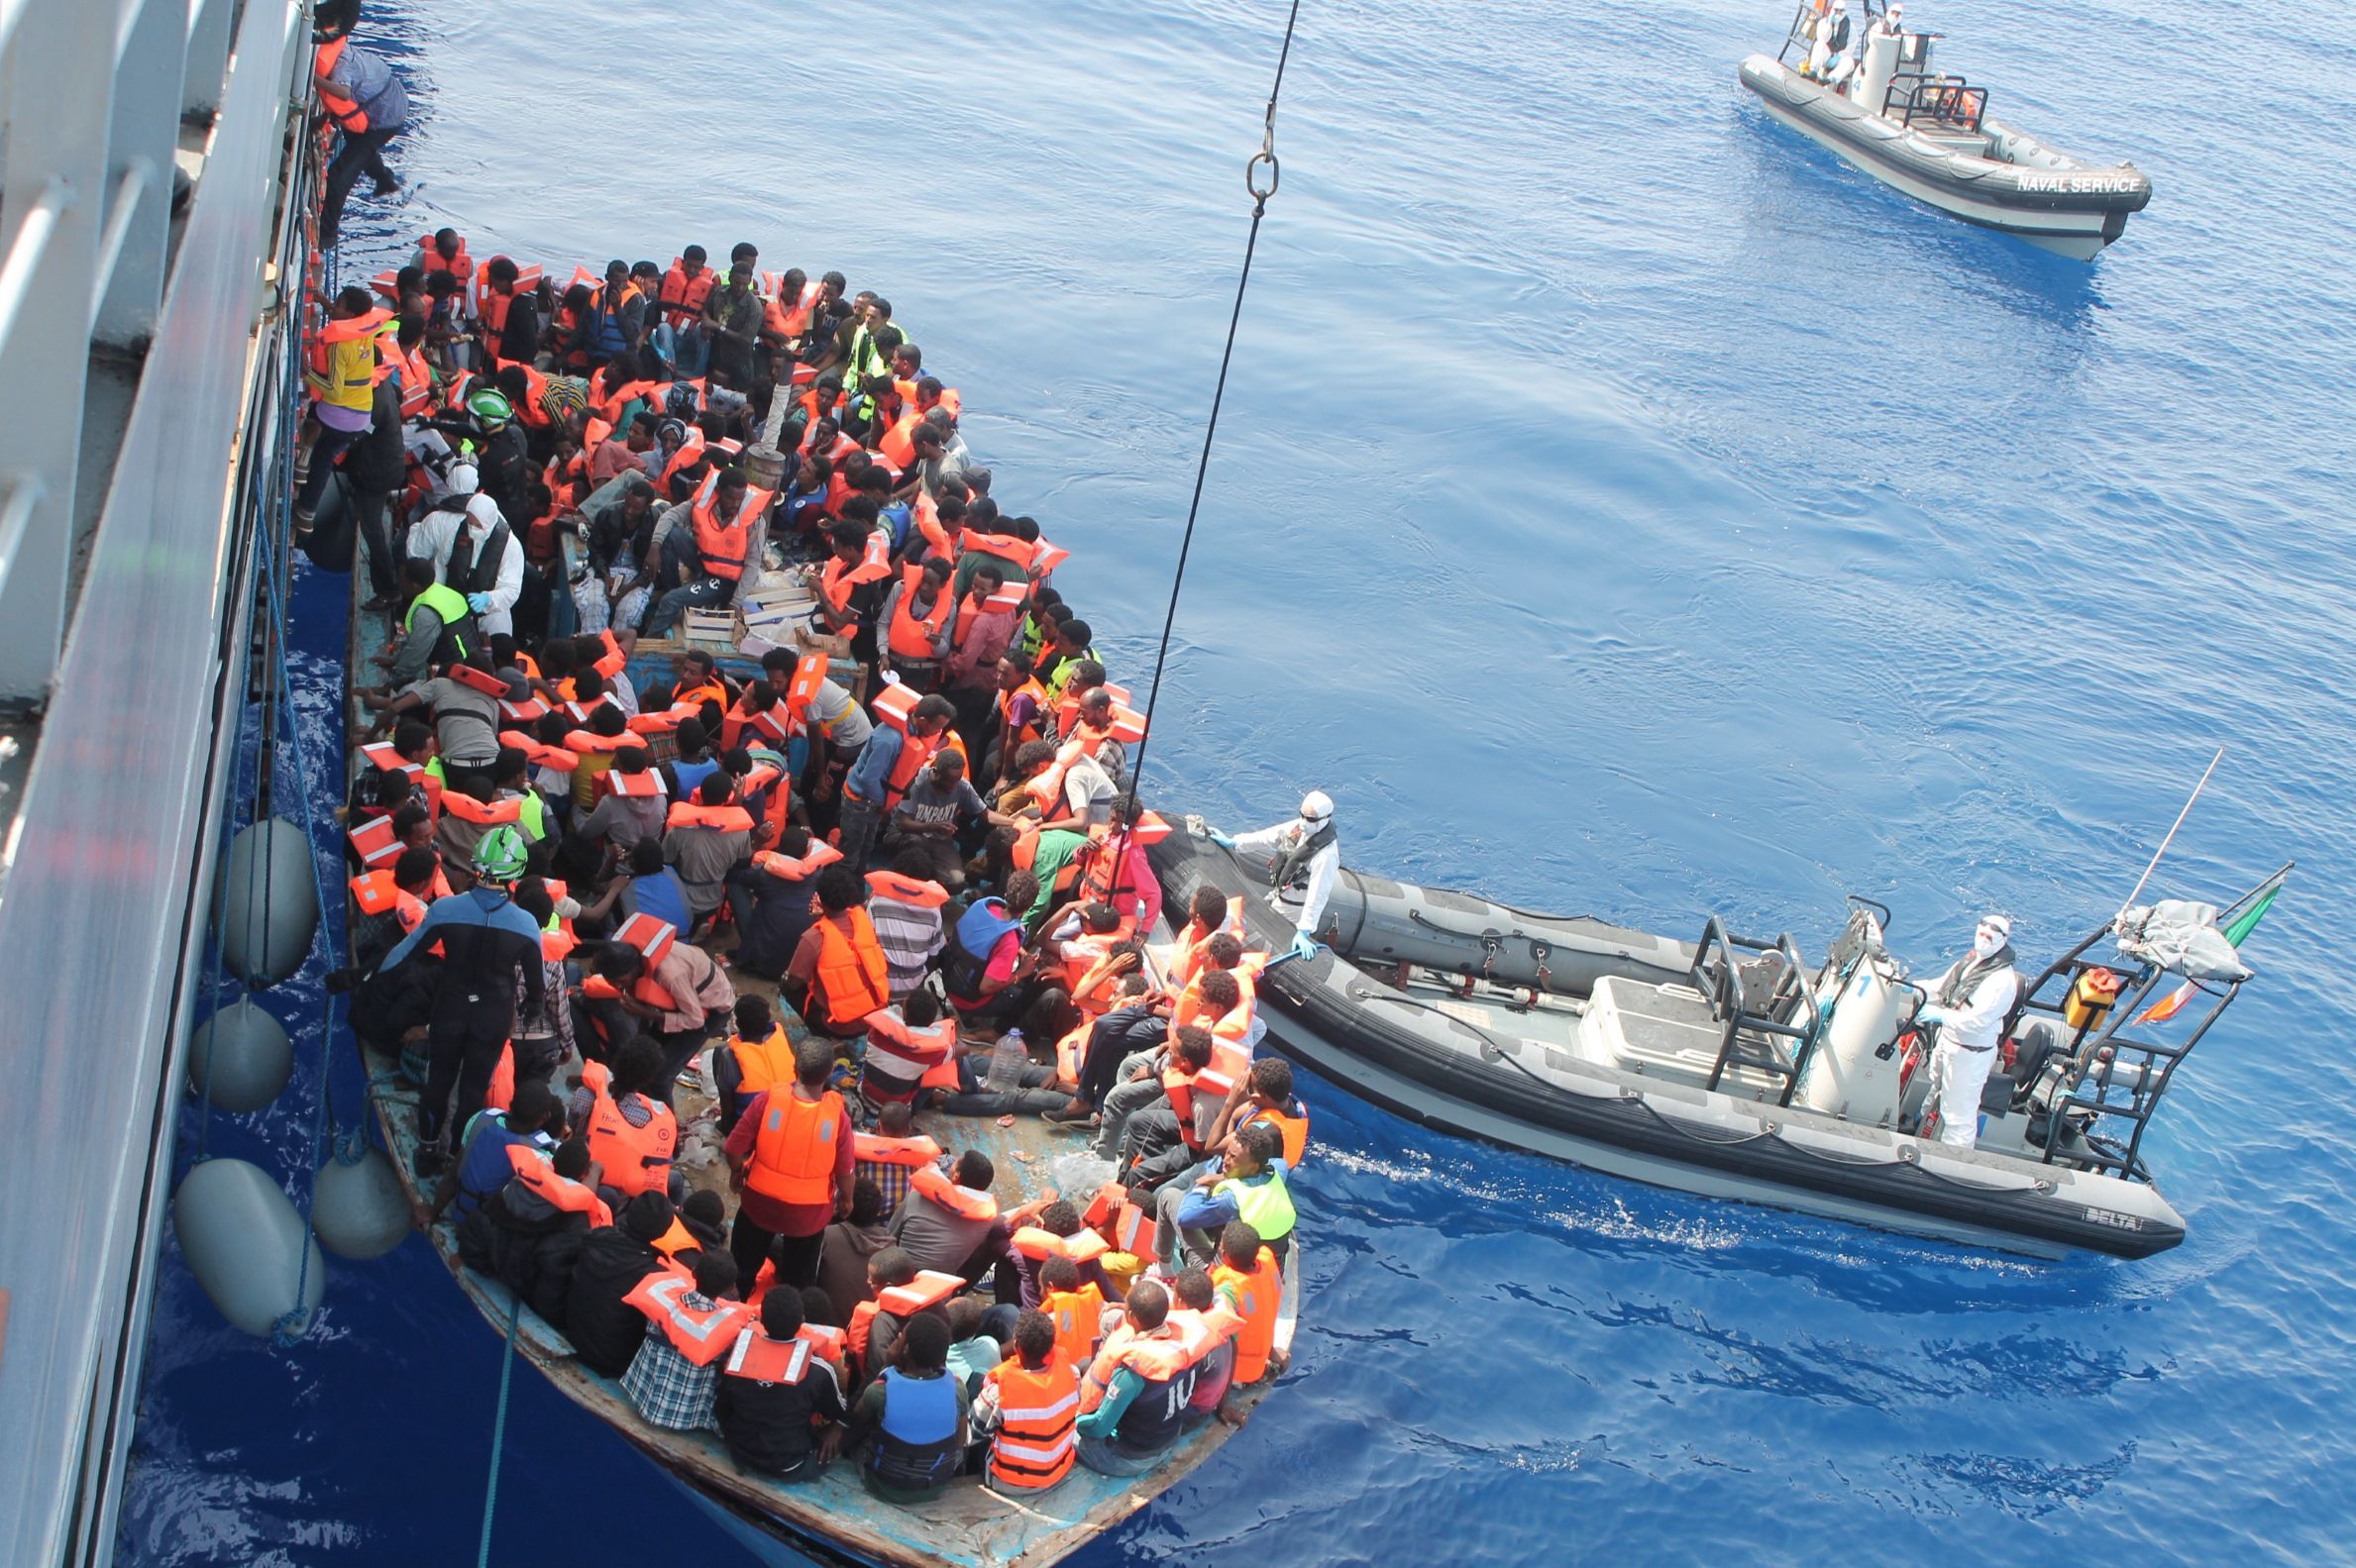 De la casualitat, miracle: apareix la mare d'una nena que havia arribat sola a Lampedusa